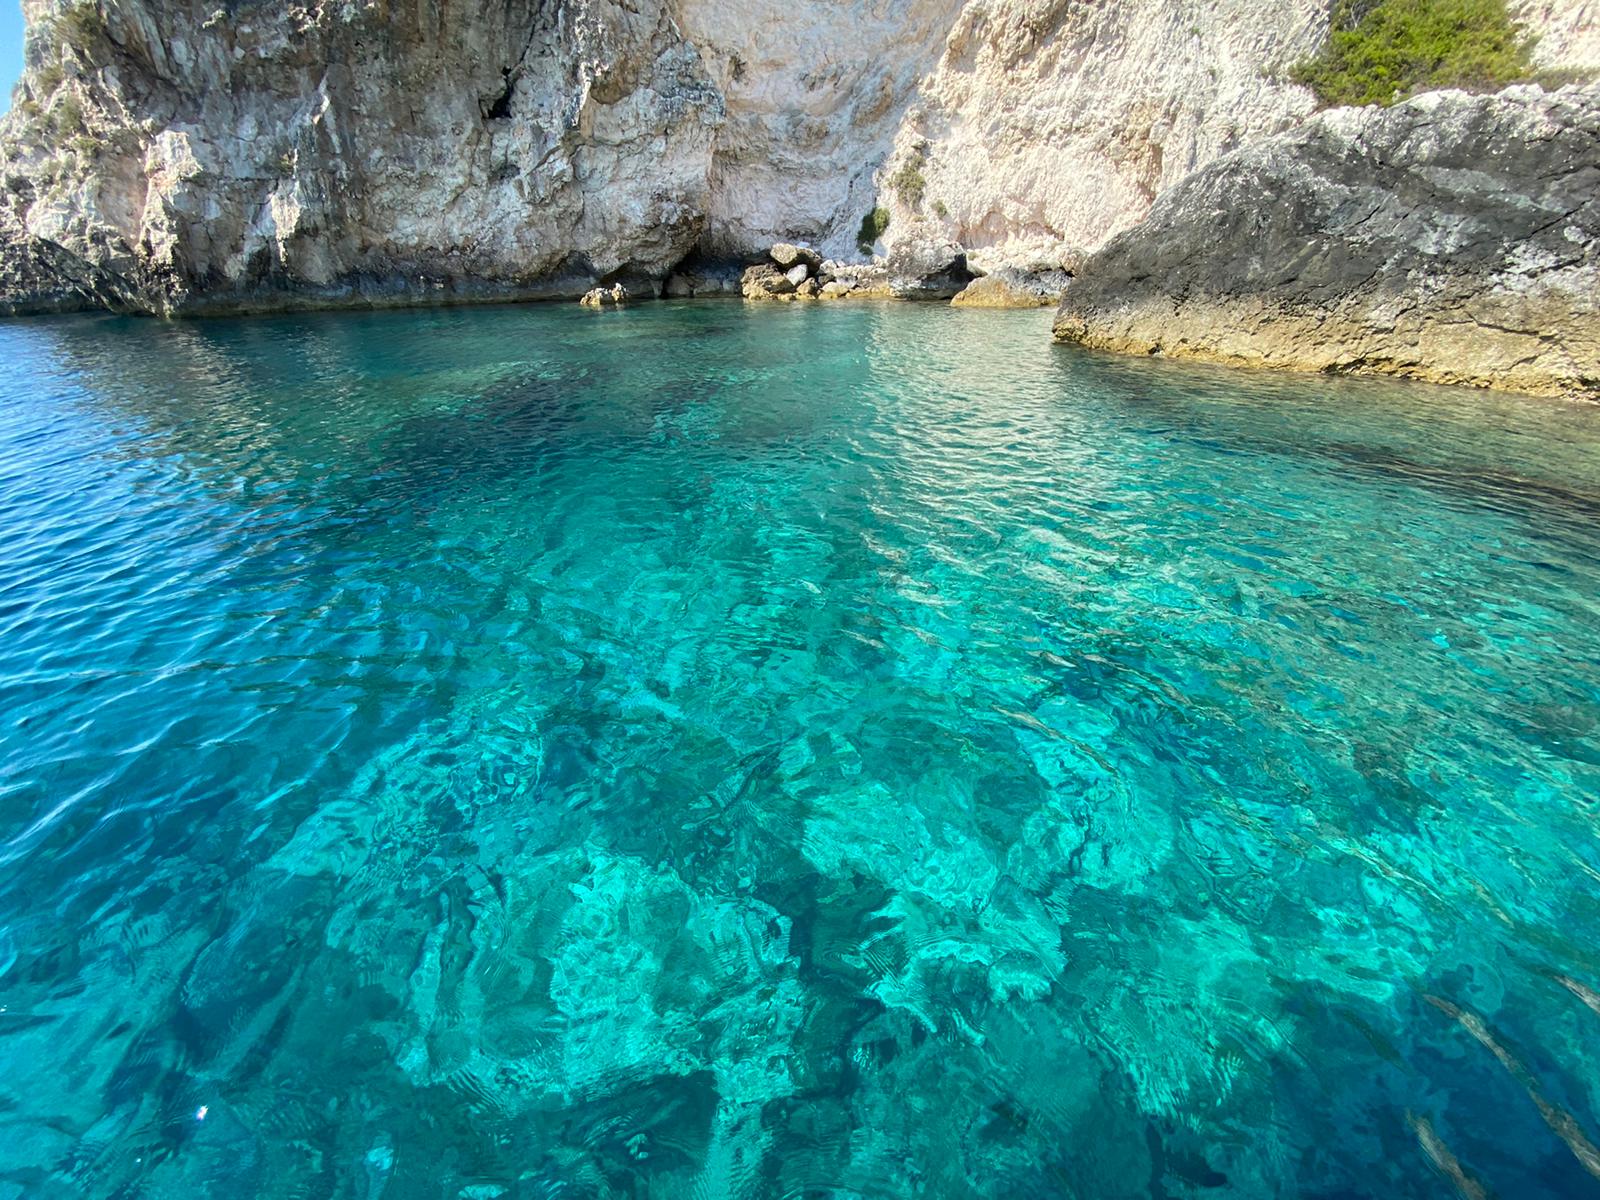 Galleria Bandiera Blu 2020 alle Isole Tremiti  Emiliano: “in Puglia grande risultato, siamo orgogliosi” - Diapositiva 3 di 8